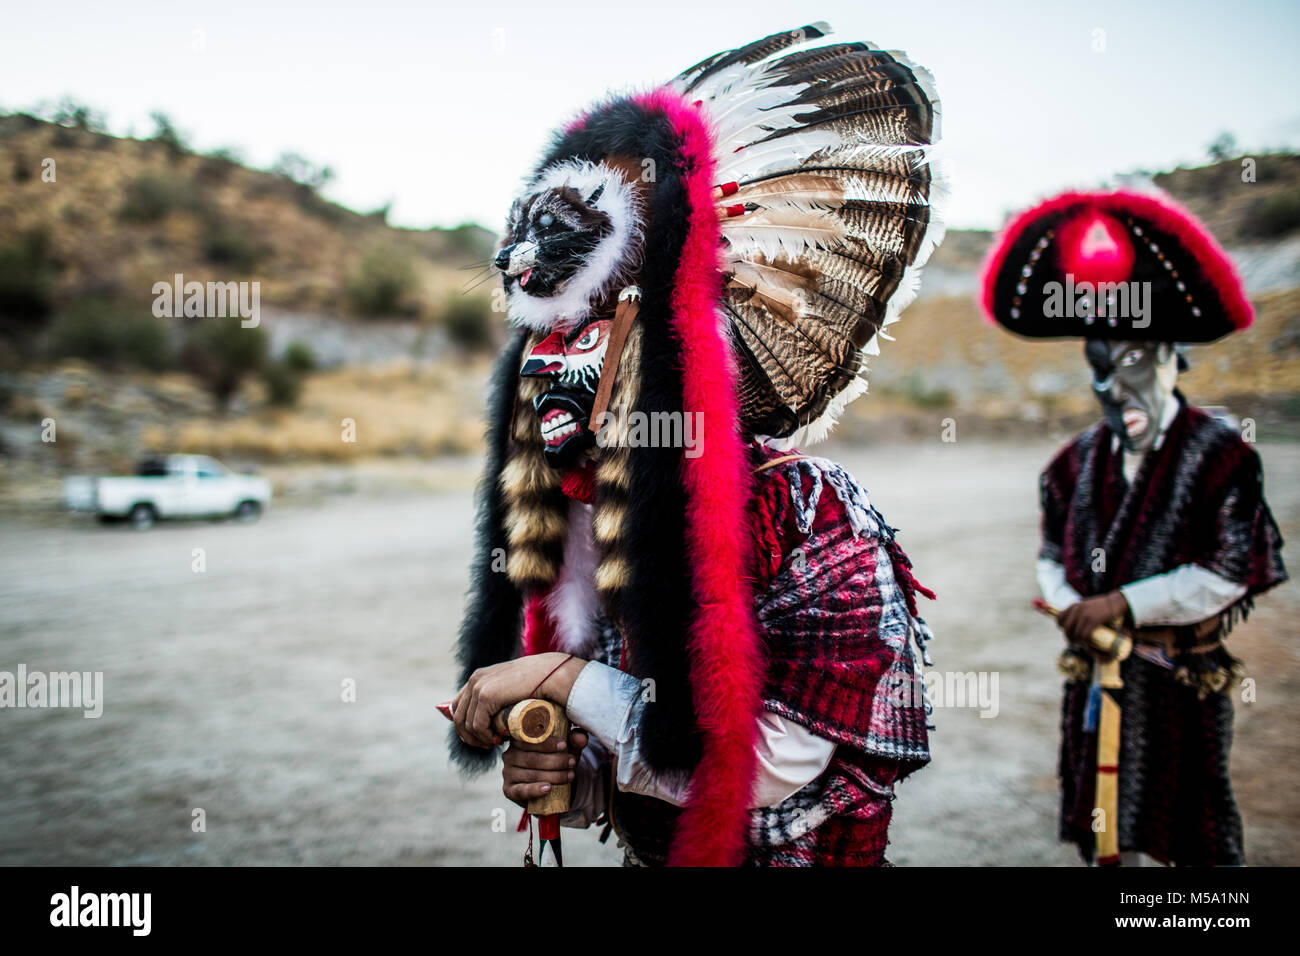 Die Pharisäer des Yaqui Stammes führen Sie ein Ritual mit Masken von  seltsamen Zeichen von Tieren, Dämonen, Aliens, Außerirdische, etc., als  Teil der Fastenzeit in Coloso Alto Kolonie in Hermosillo, Sonora, Mexiko